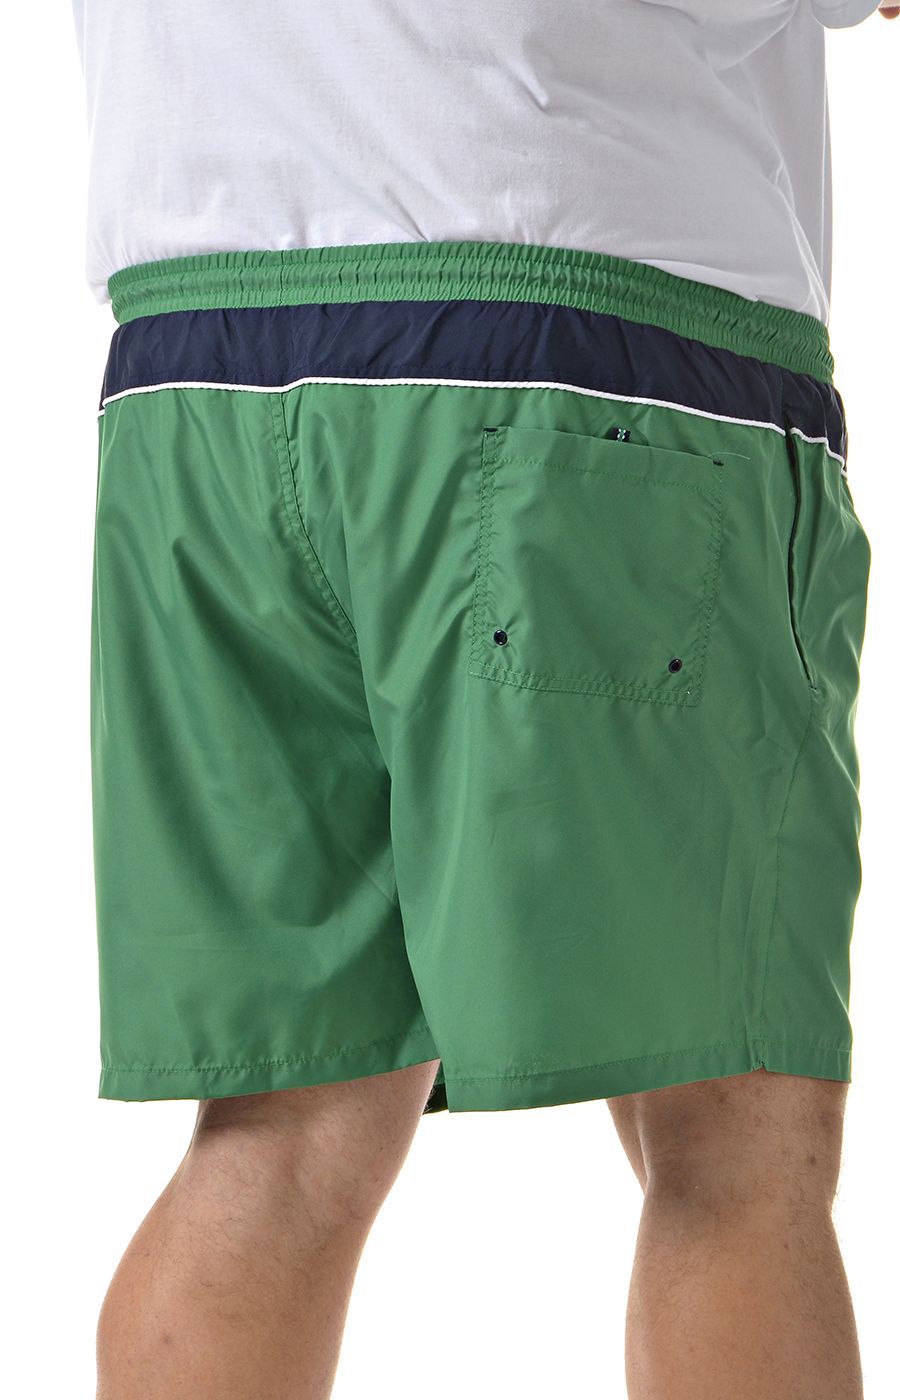 Купальные шорты зелёные большого размера